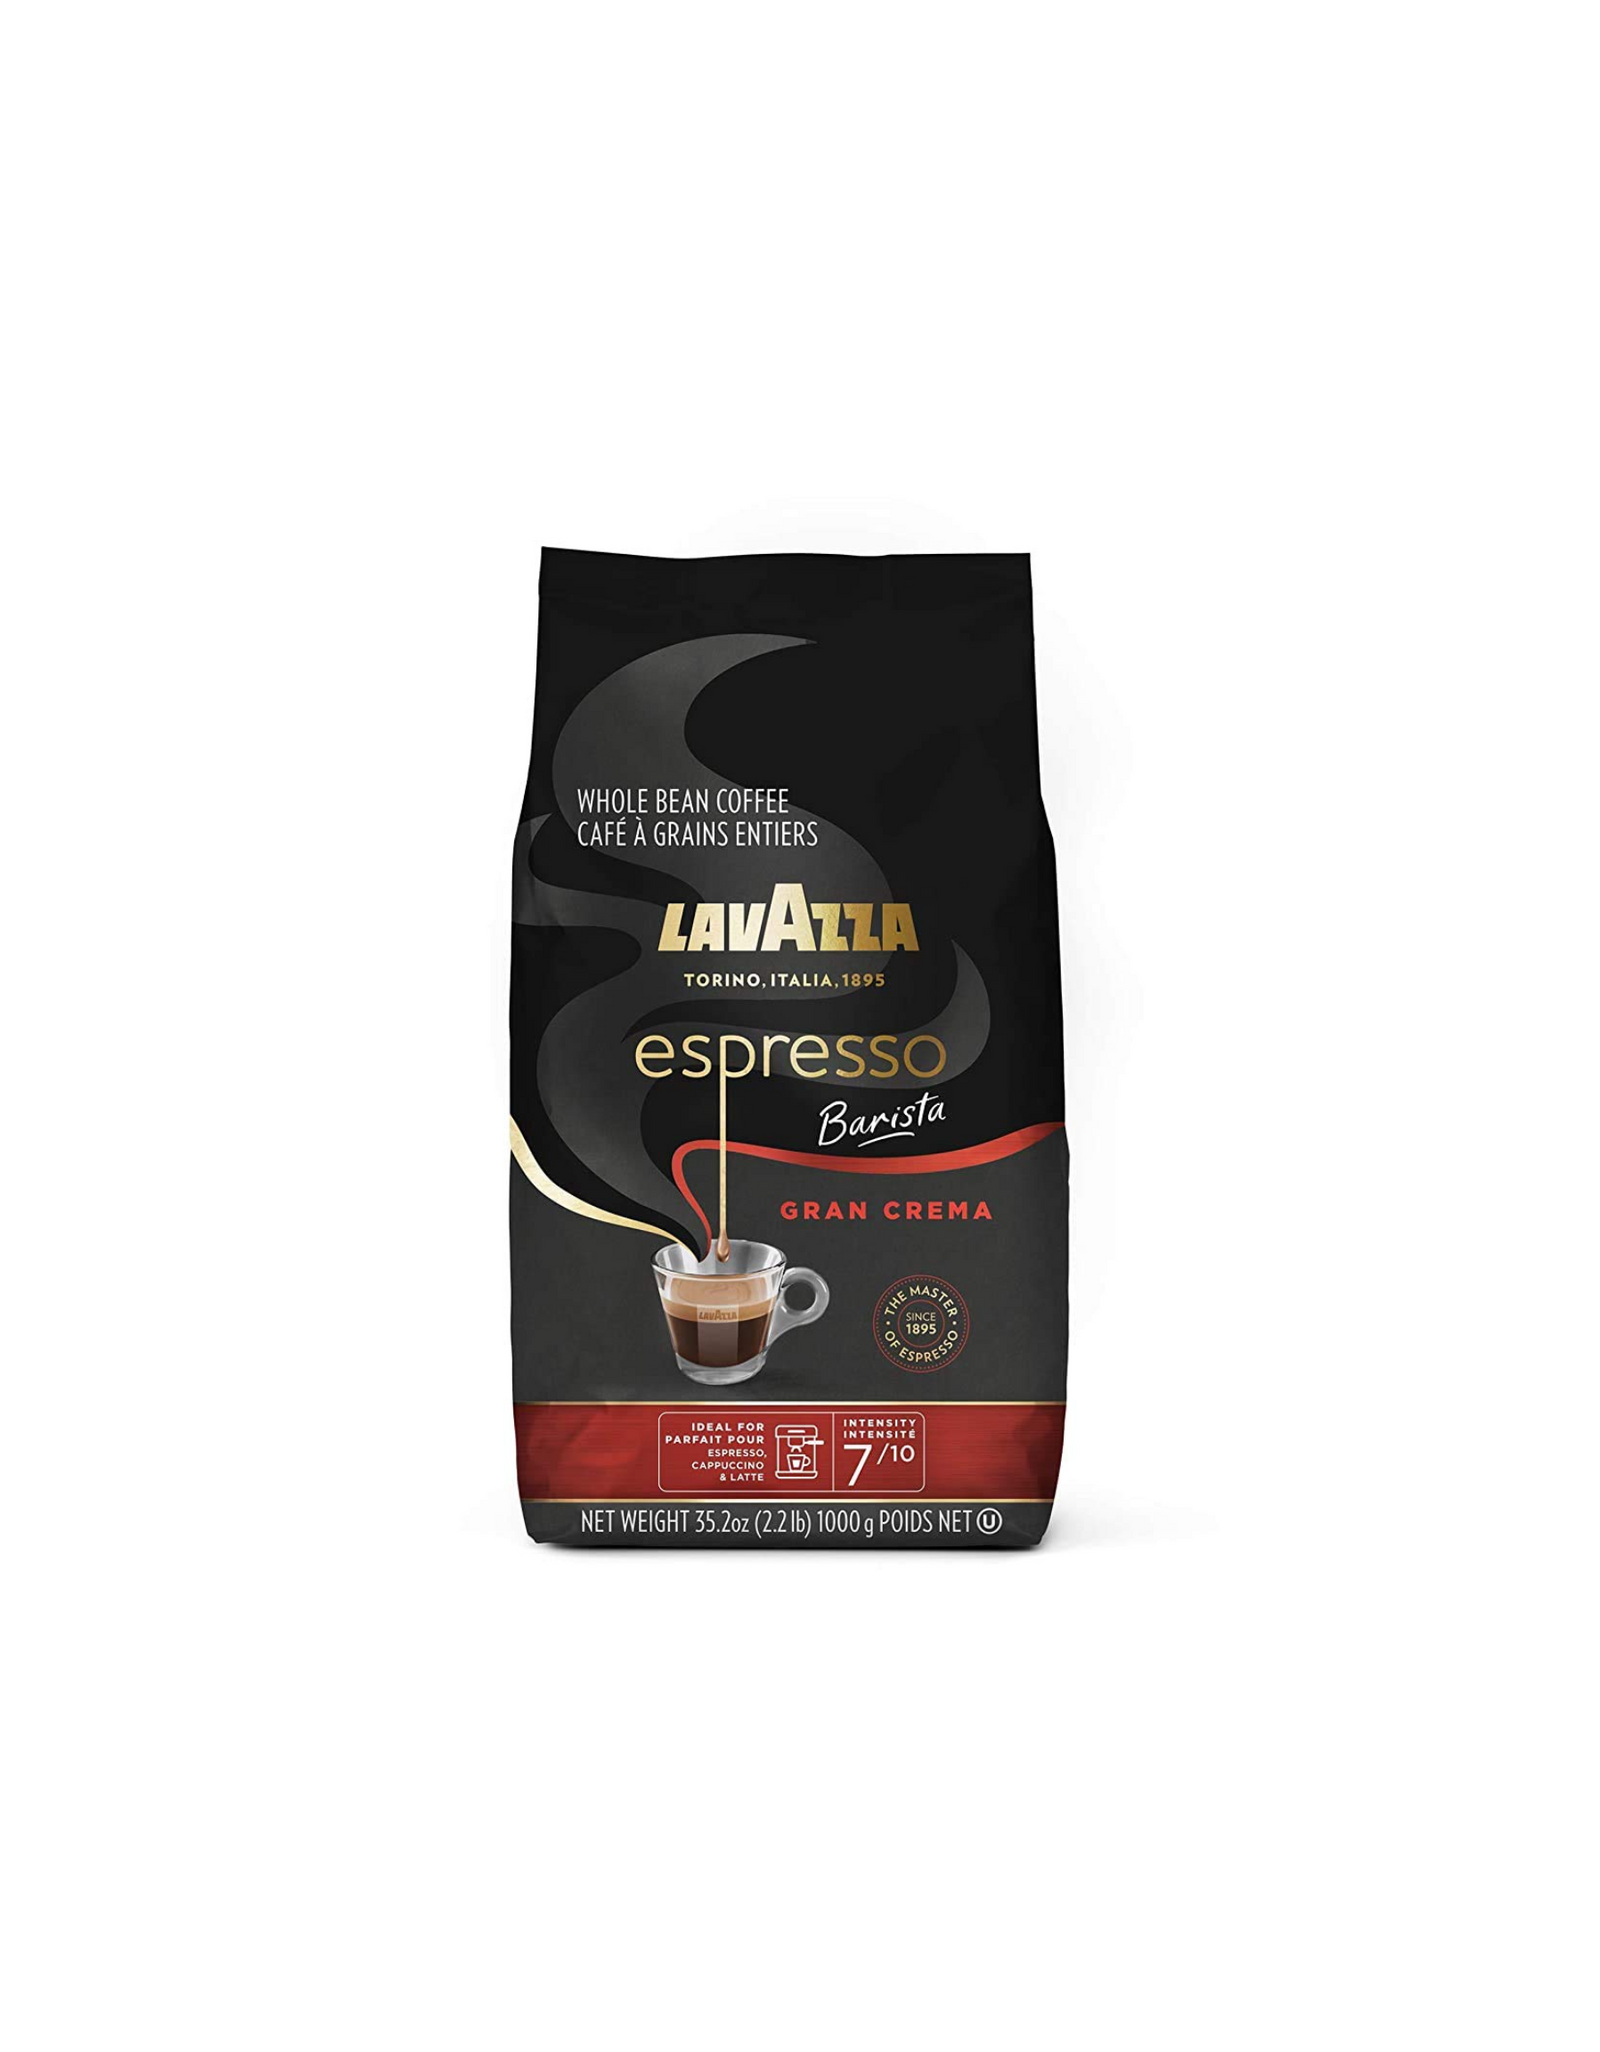 Coffee beans Lavazza Espresso 1kg – I love coffee